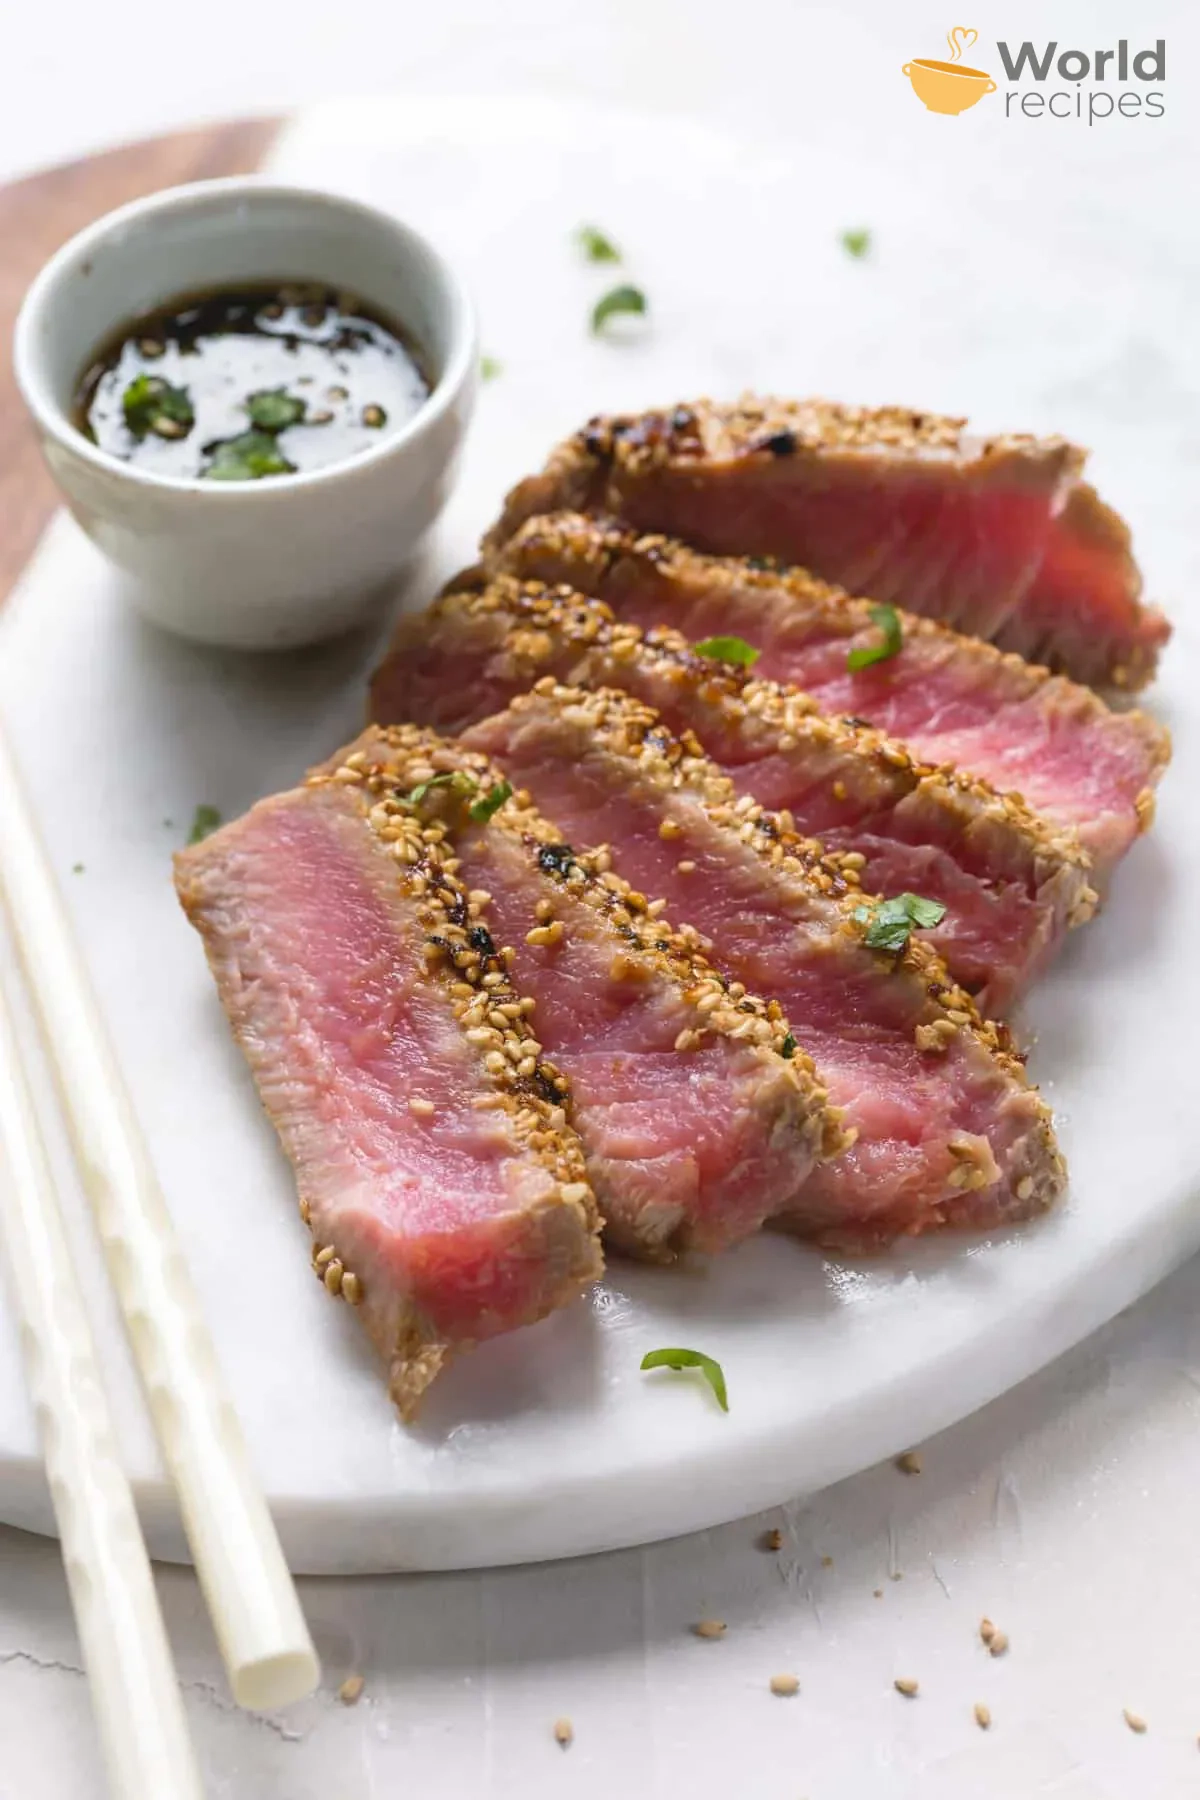 Keptuvėje keptas tuno kepsnys su sezamais - geriausias receptas